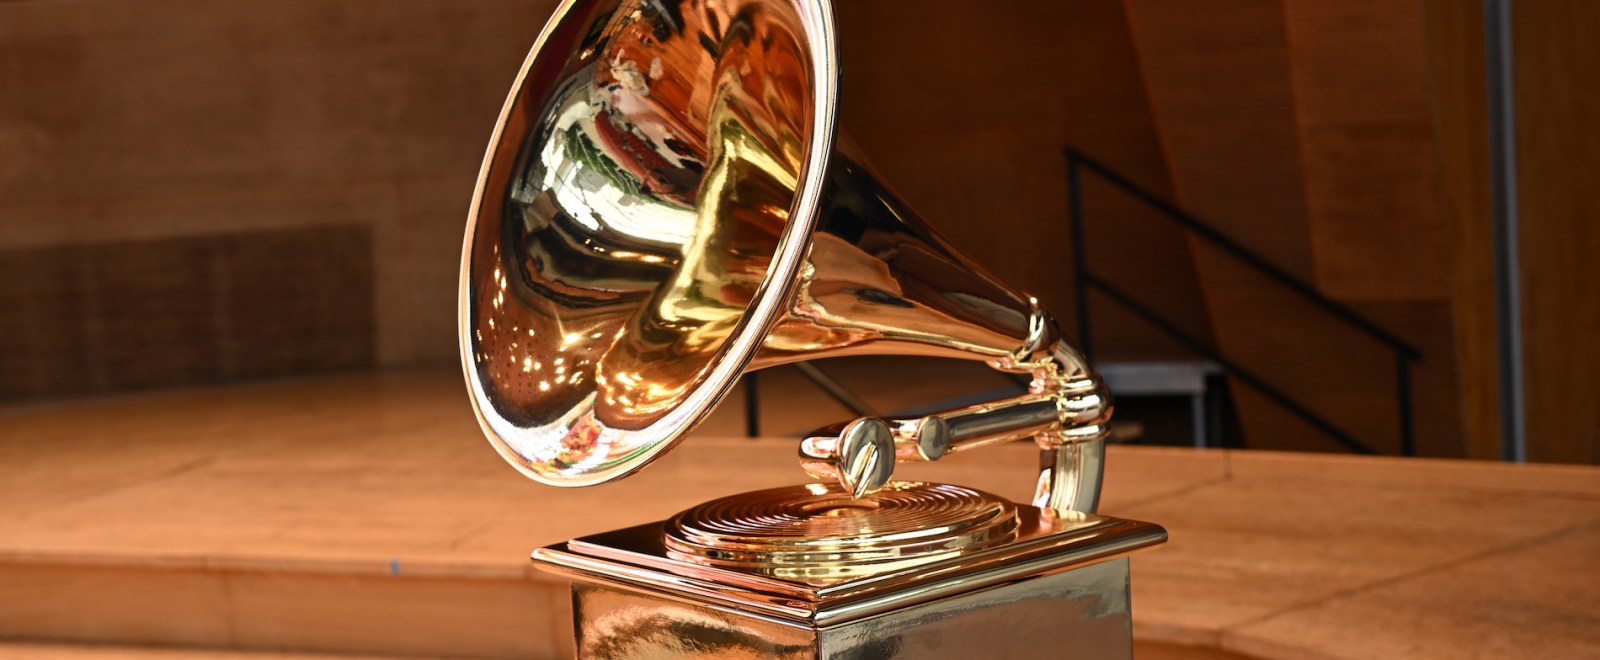 Grammy Awards Trophy Grammys Grammophone